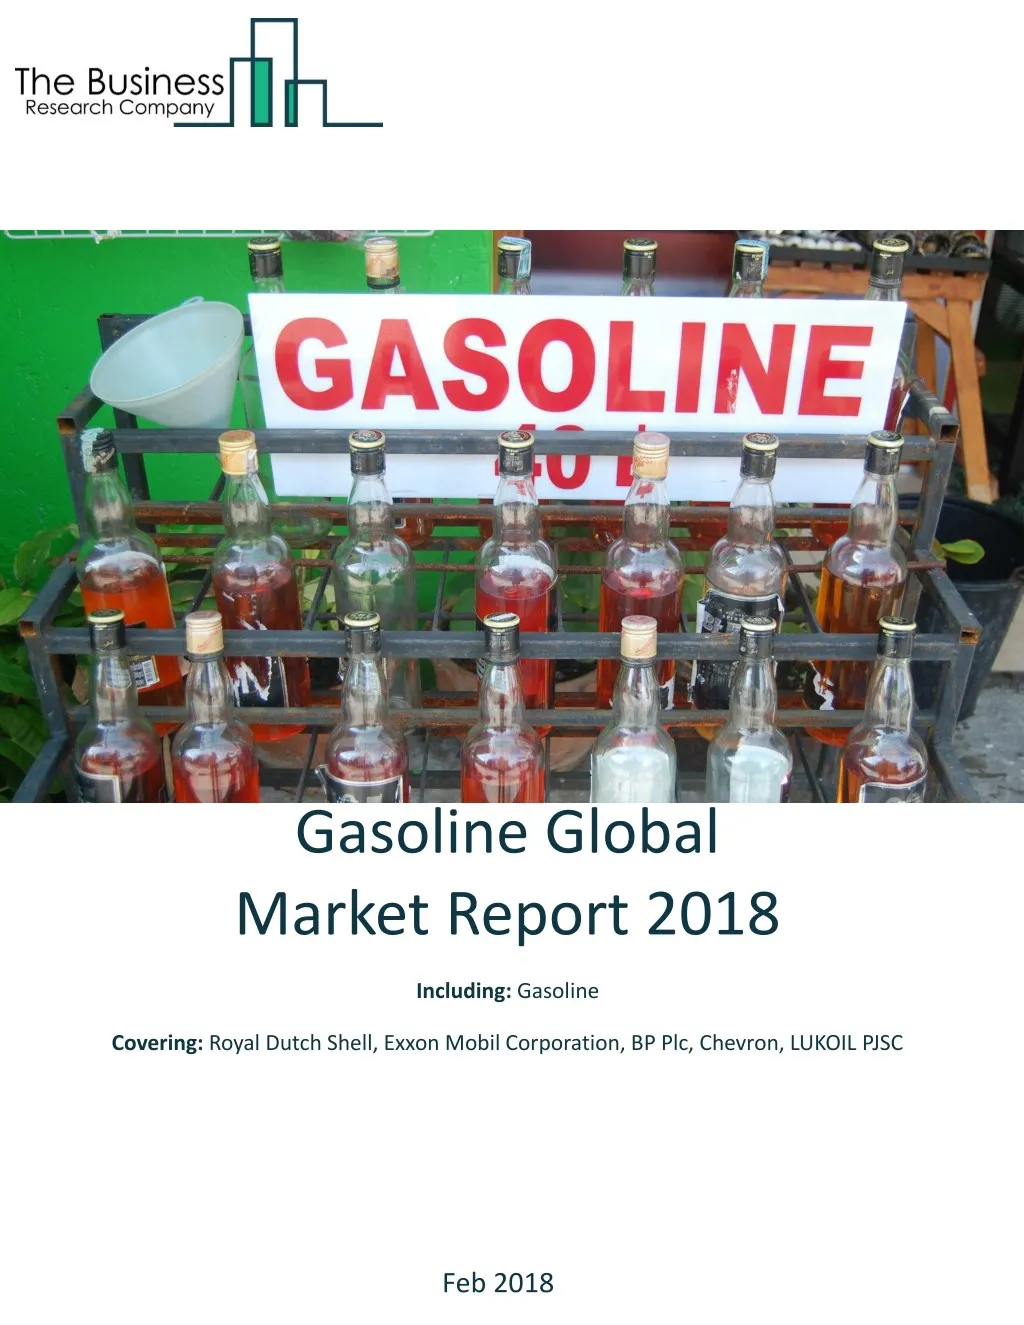 gasoline global market report 2018